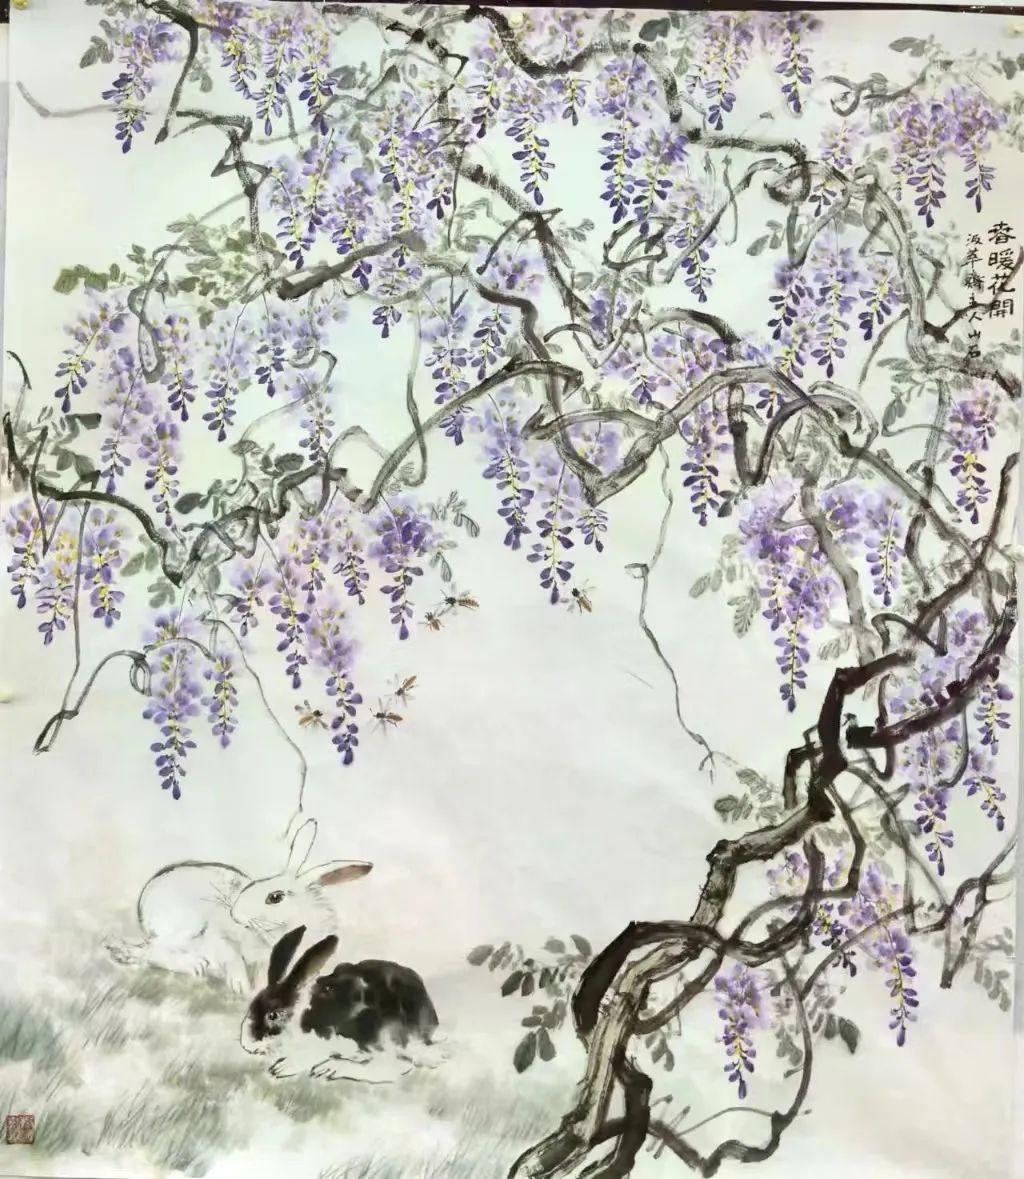 吴山石丨沉醉自然仙境，品味国画之美